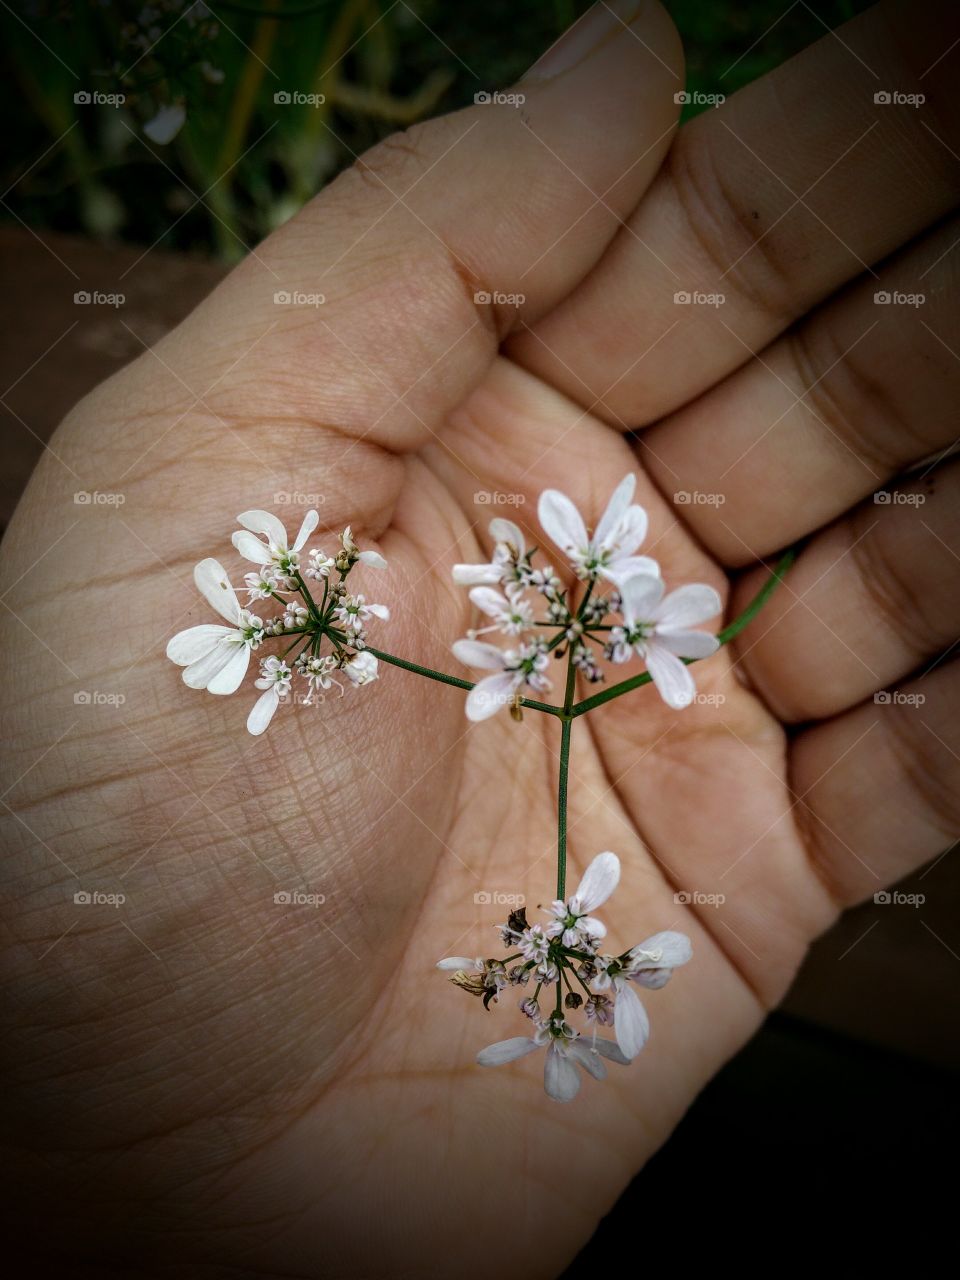 flowering